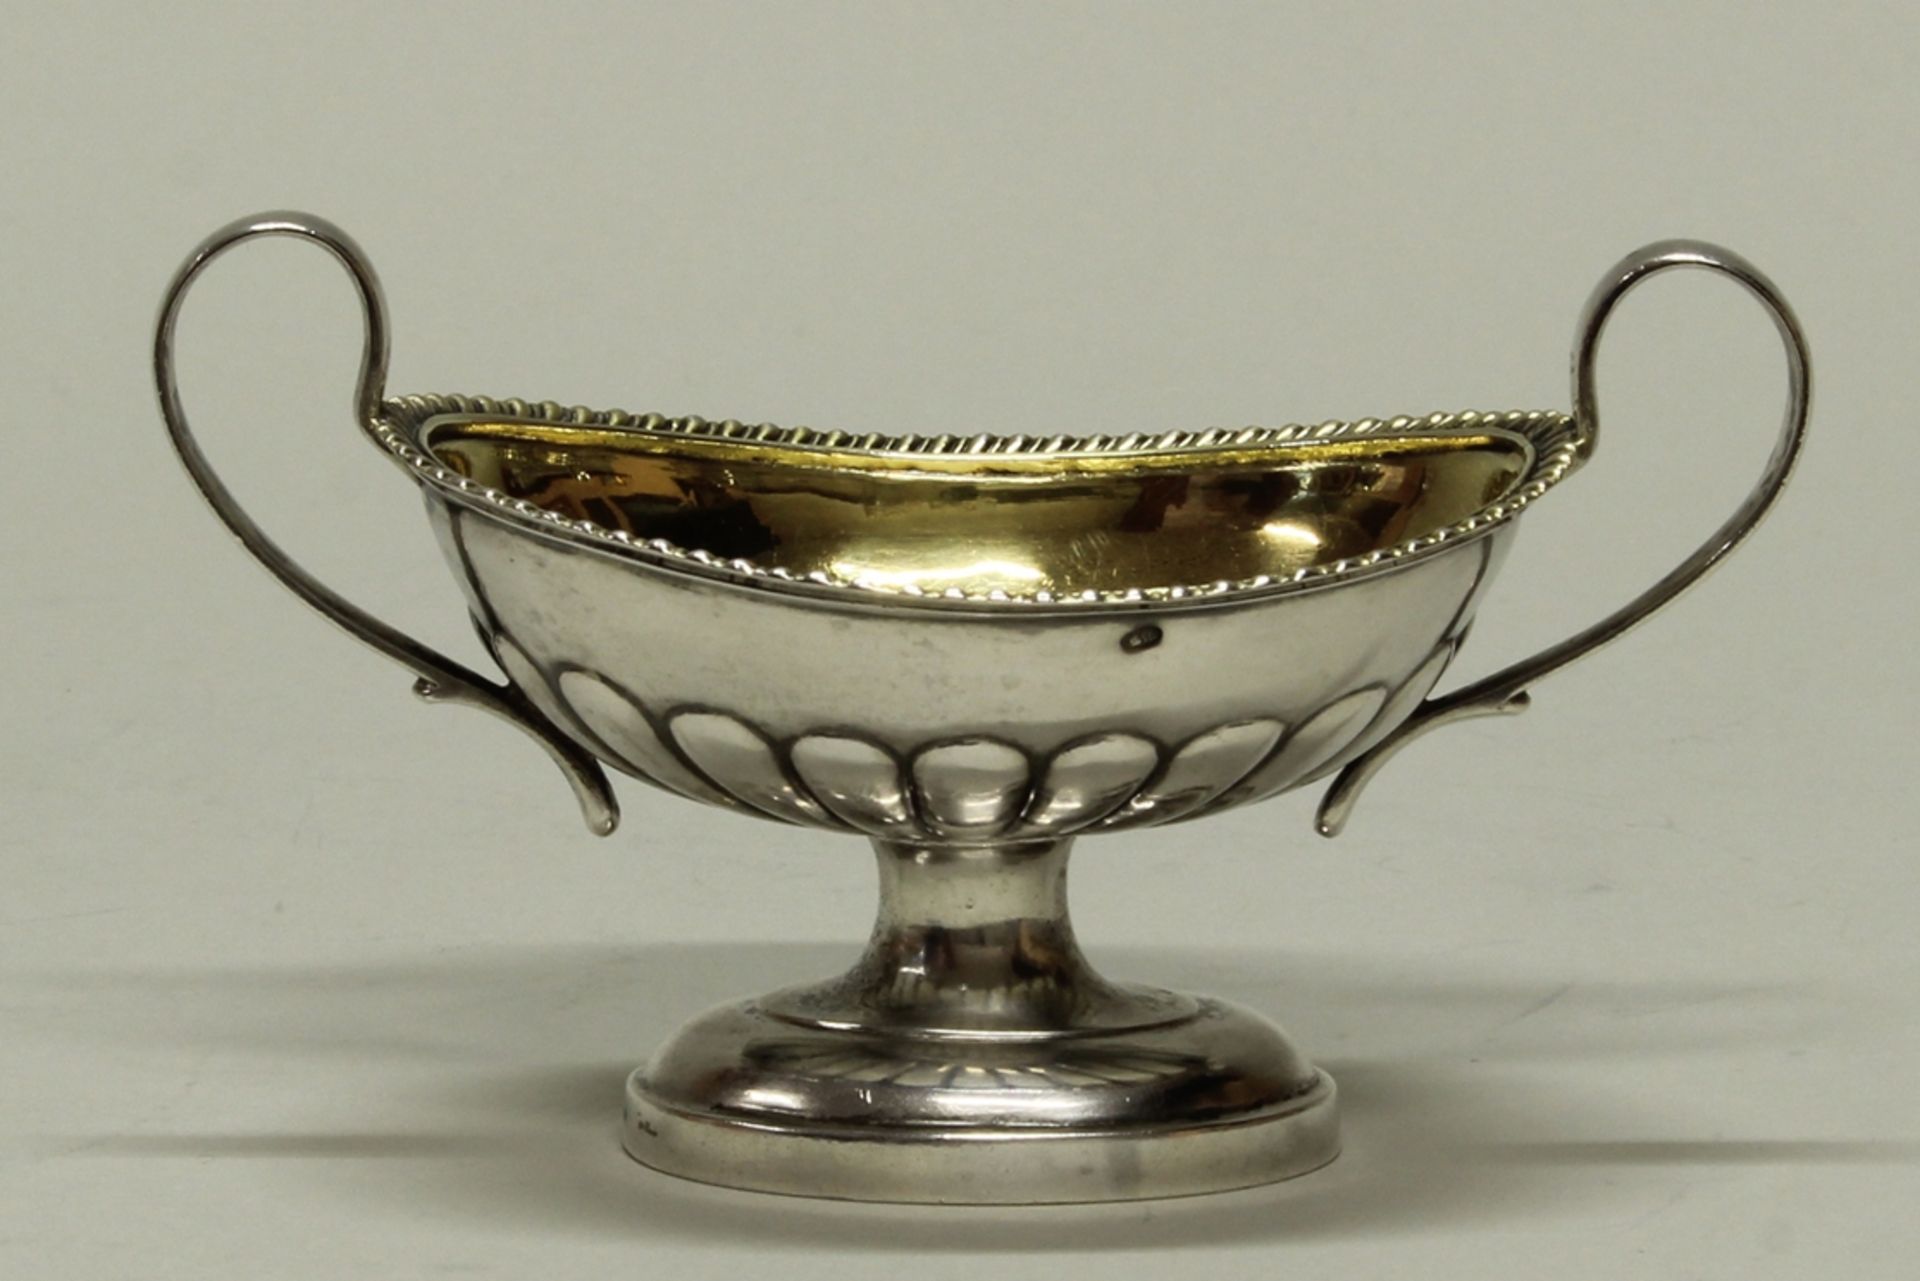 Salière, Silber 84er, Russland, 19. Jh., innen vergoldet, oval, godroniert, zwei Handhaben, 7 x 12.